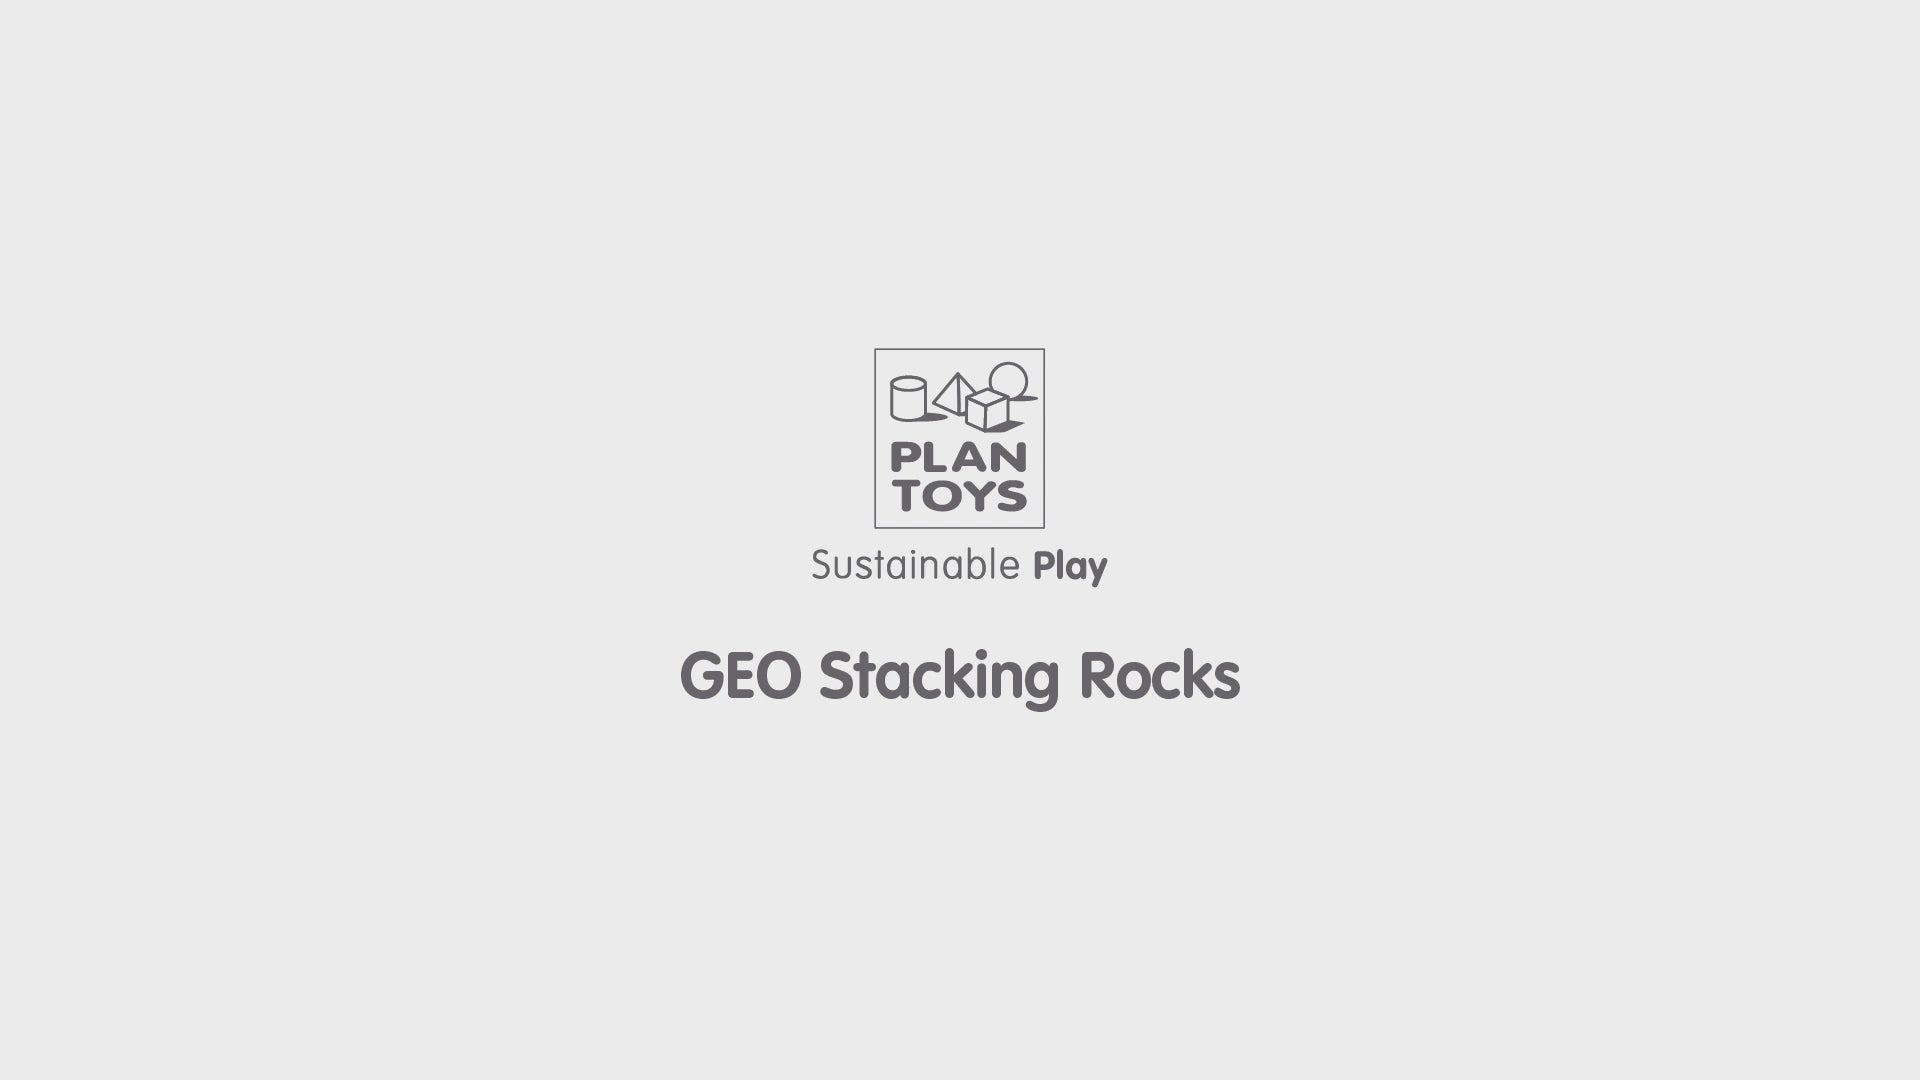 GEO STACKING ROCKS